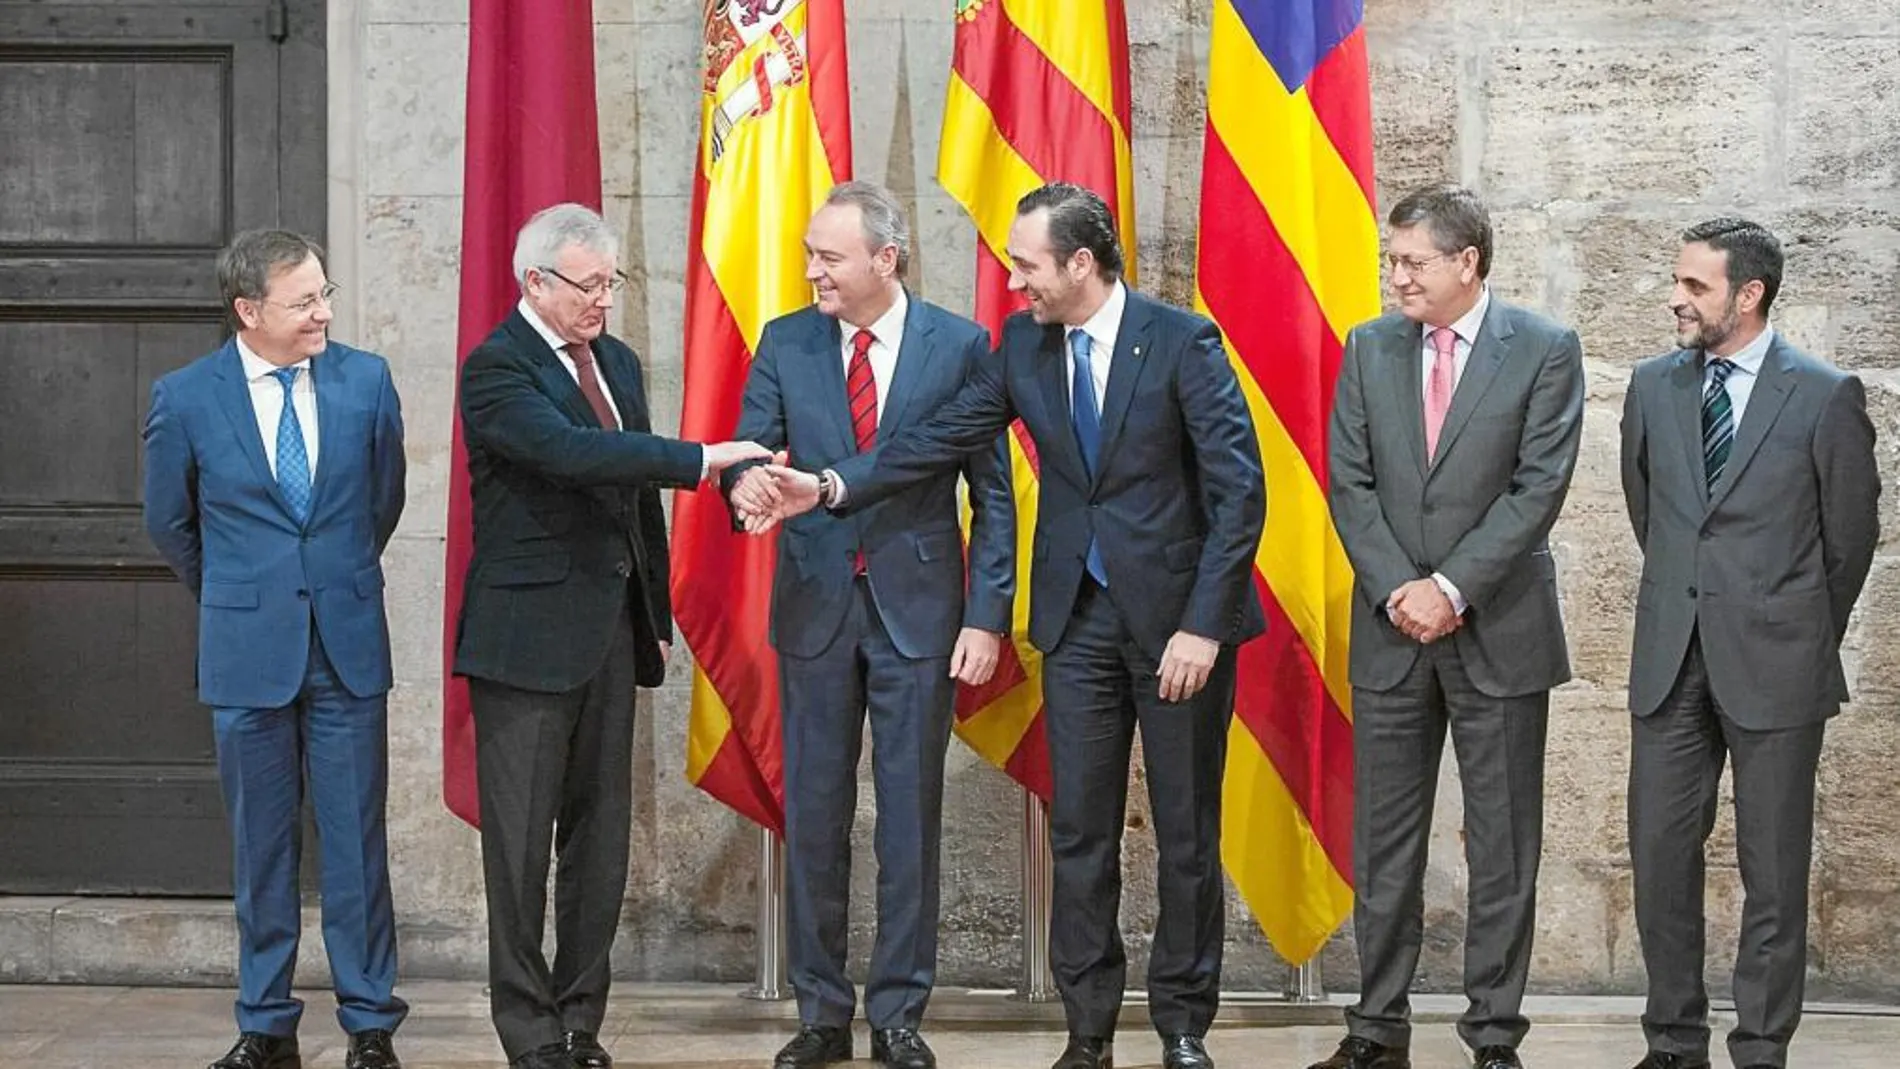 Los presidentes autonómicos Valcárcel, Fabra y Bauzá se dan la mano ante la mirada de sus consejeros de Hacienda